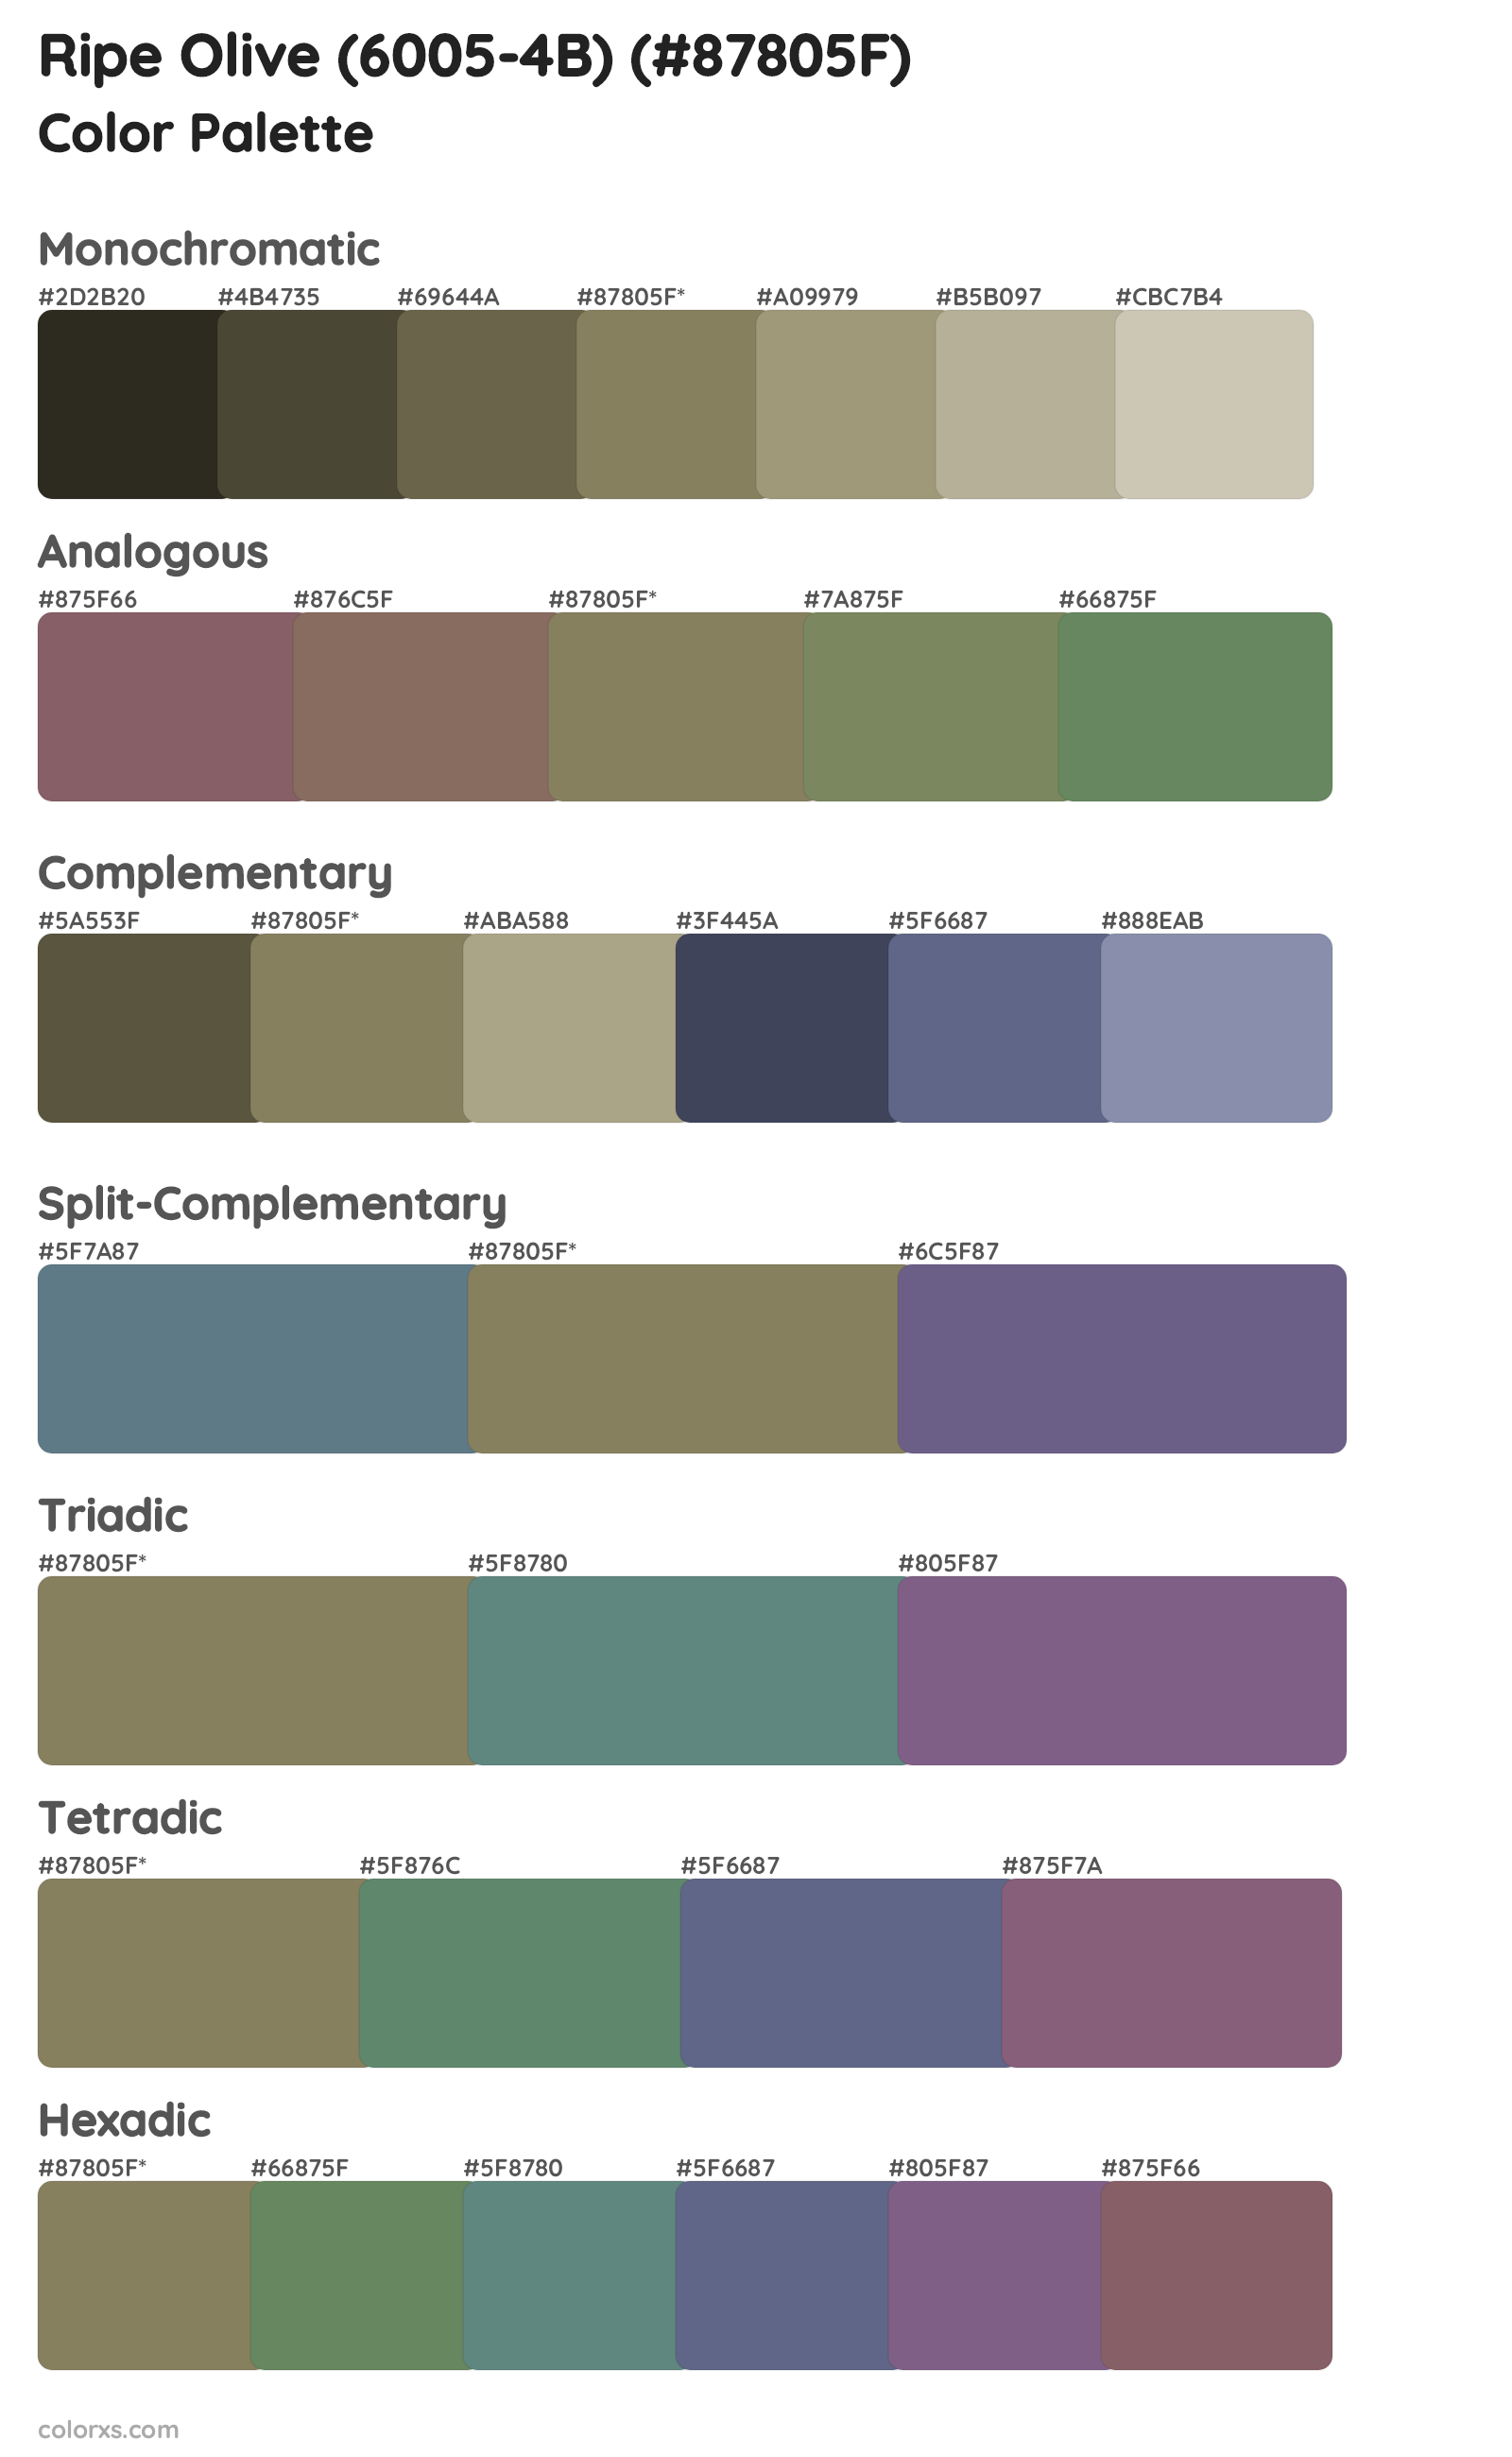 Ripe Olive (6005-4B) Color Scheme Palettes